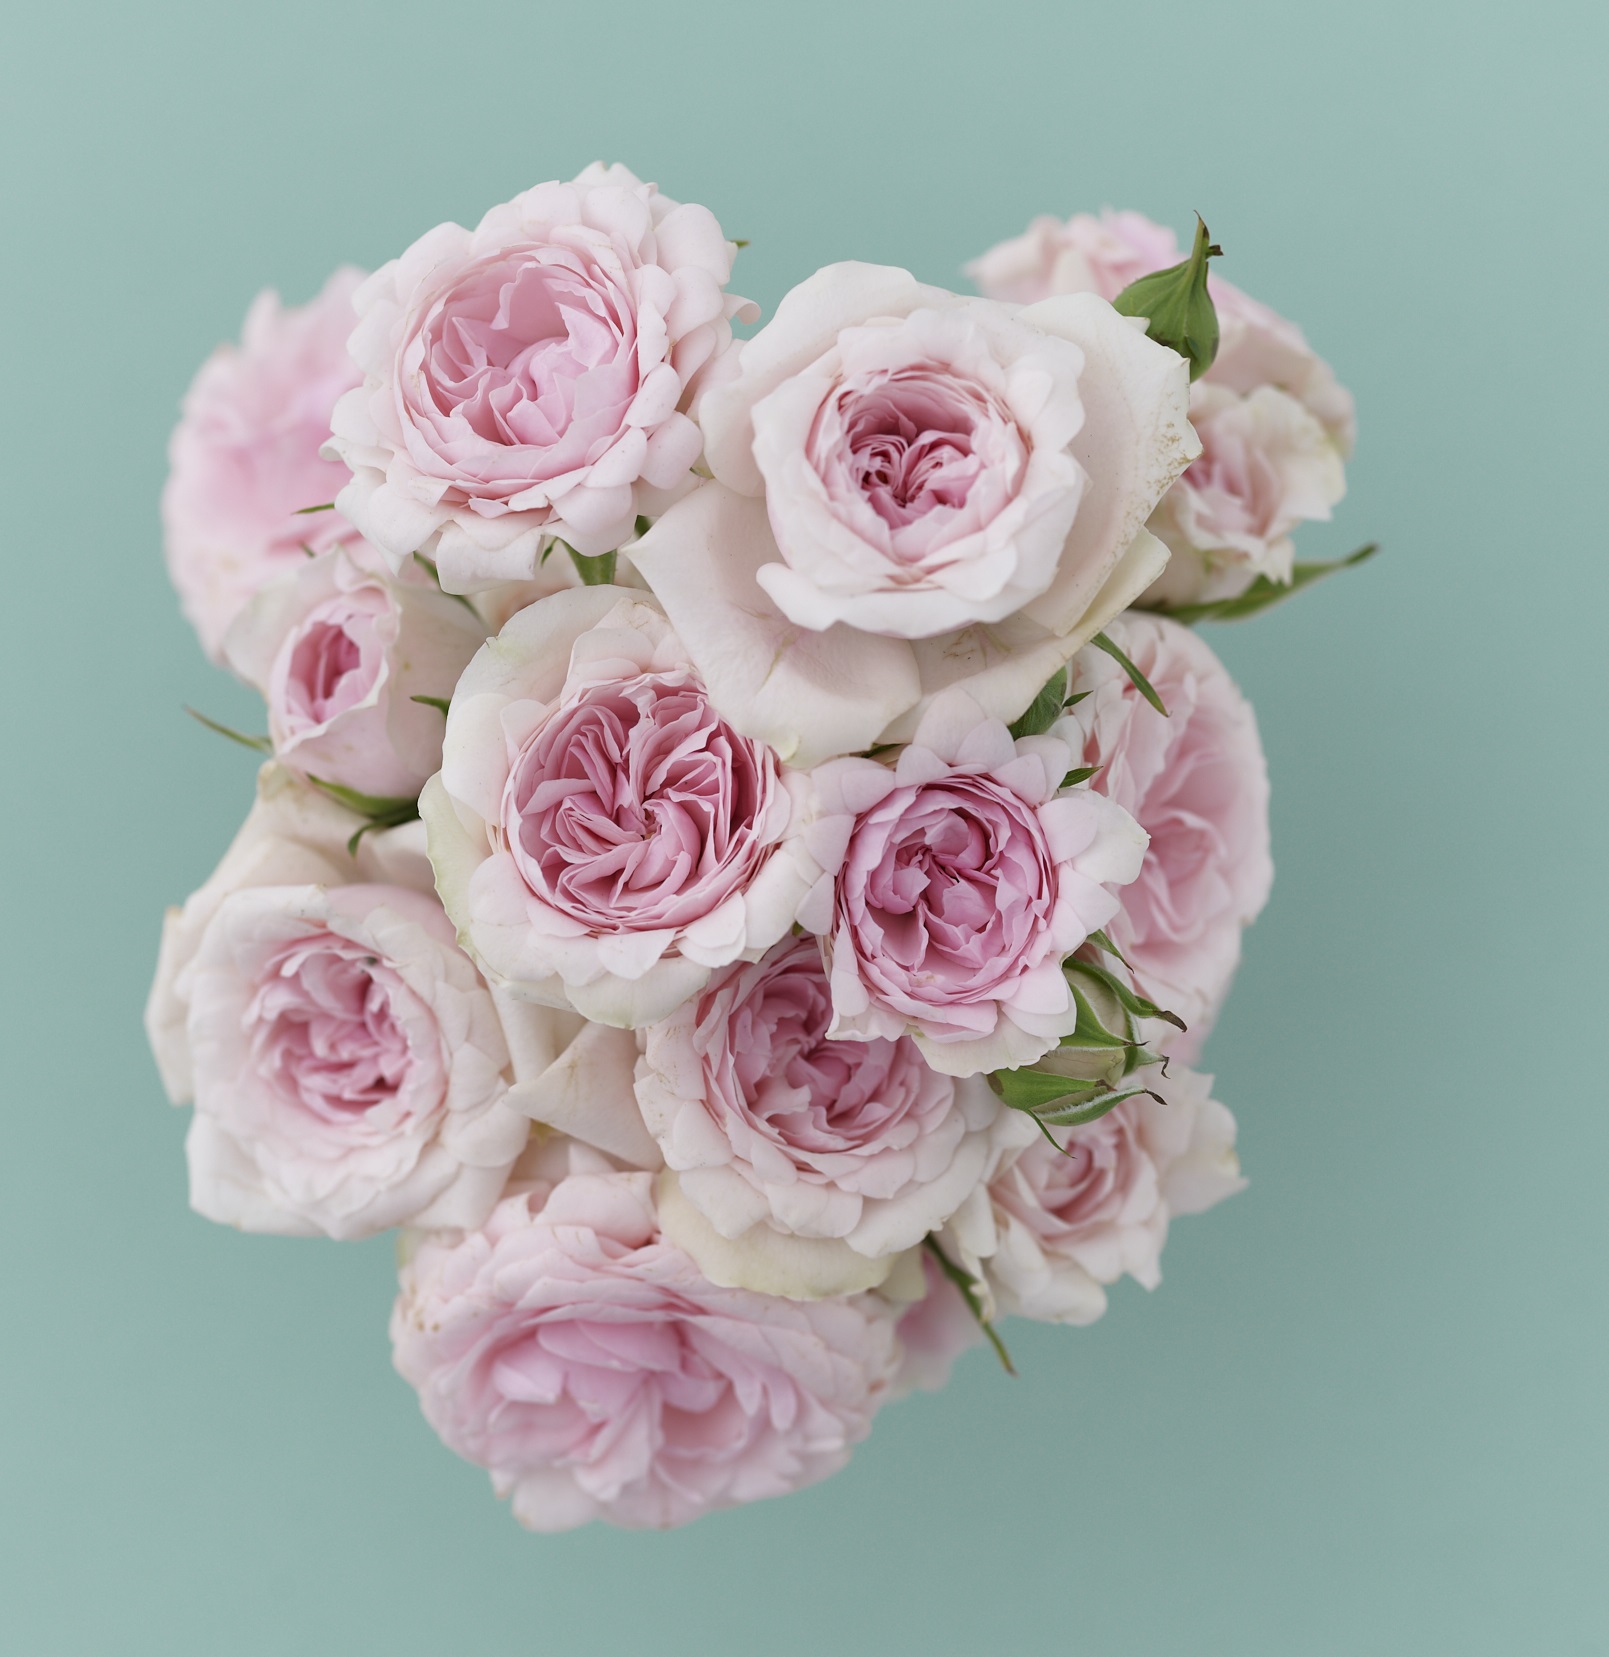 Instagram Twitterプレゼントキャンペーン 花のある暮らしを提唱している 花時間 から 花時間 という名前のバラ がデビュー これを記念して 花器とバラのセットを2名様にプレゼント 株式会社kadokawaのプレスリリース